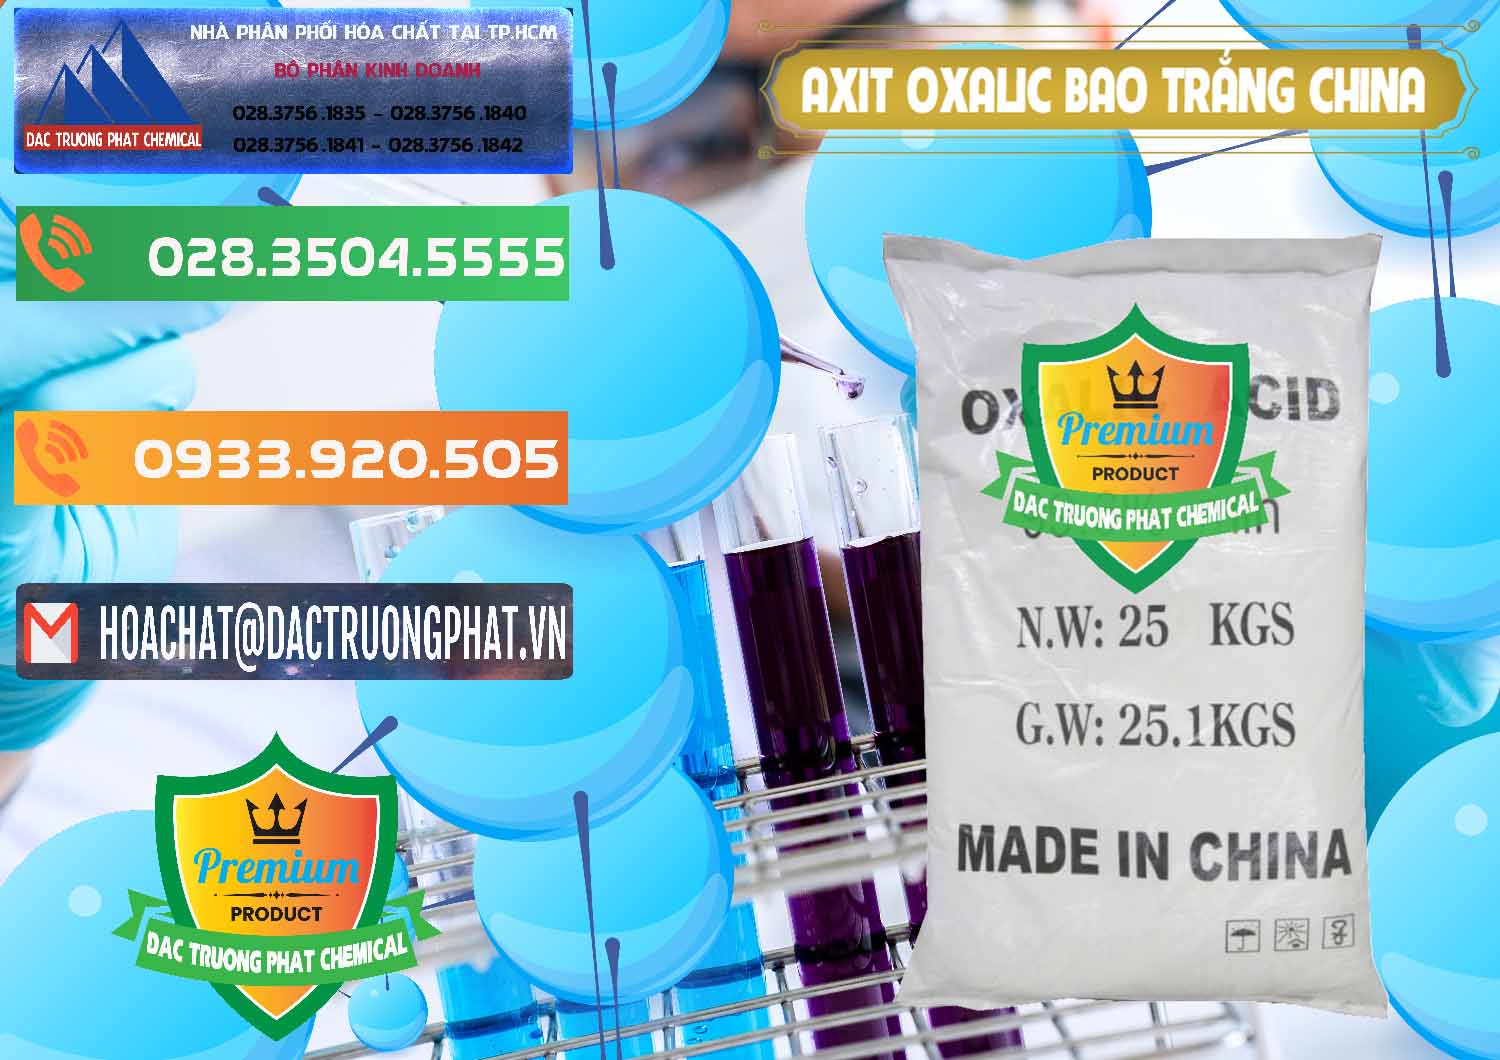 Nơi chuyên cung ứng và bán Acid Oxalic – Axit Oxalic 99.6% Bao Trắng Trung Quốc China - 0270 - Công ty chuyên cung cấp & bán hóa chất tại TP.HCM - hoachatxulynuoc.com.vn